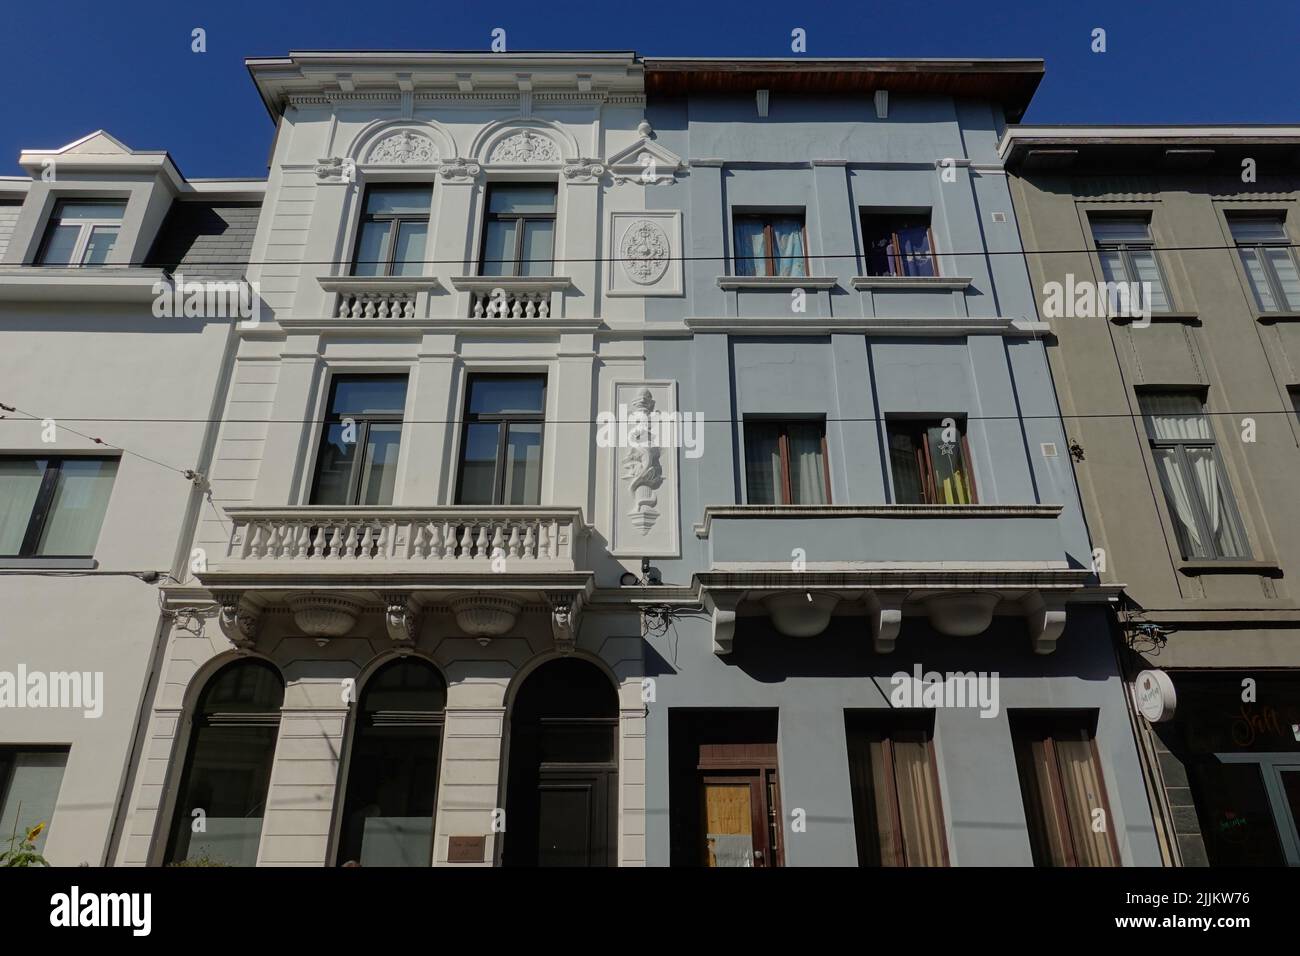 Antwerpen, vereinfachte historische Fassade // Antwerp, fachada reducida Foto de stock